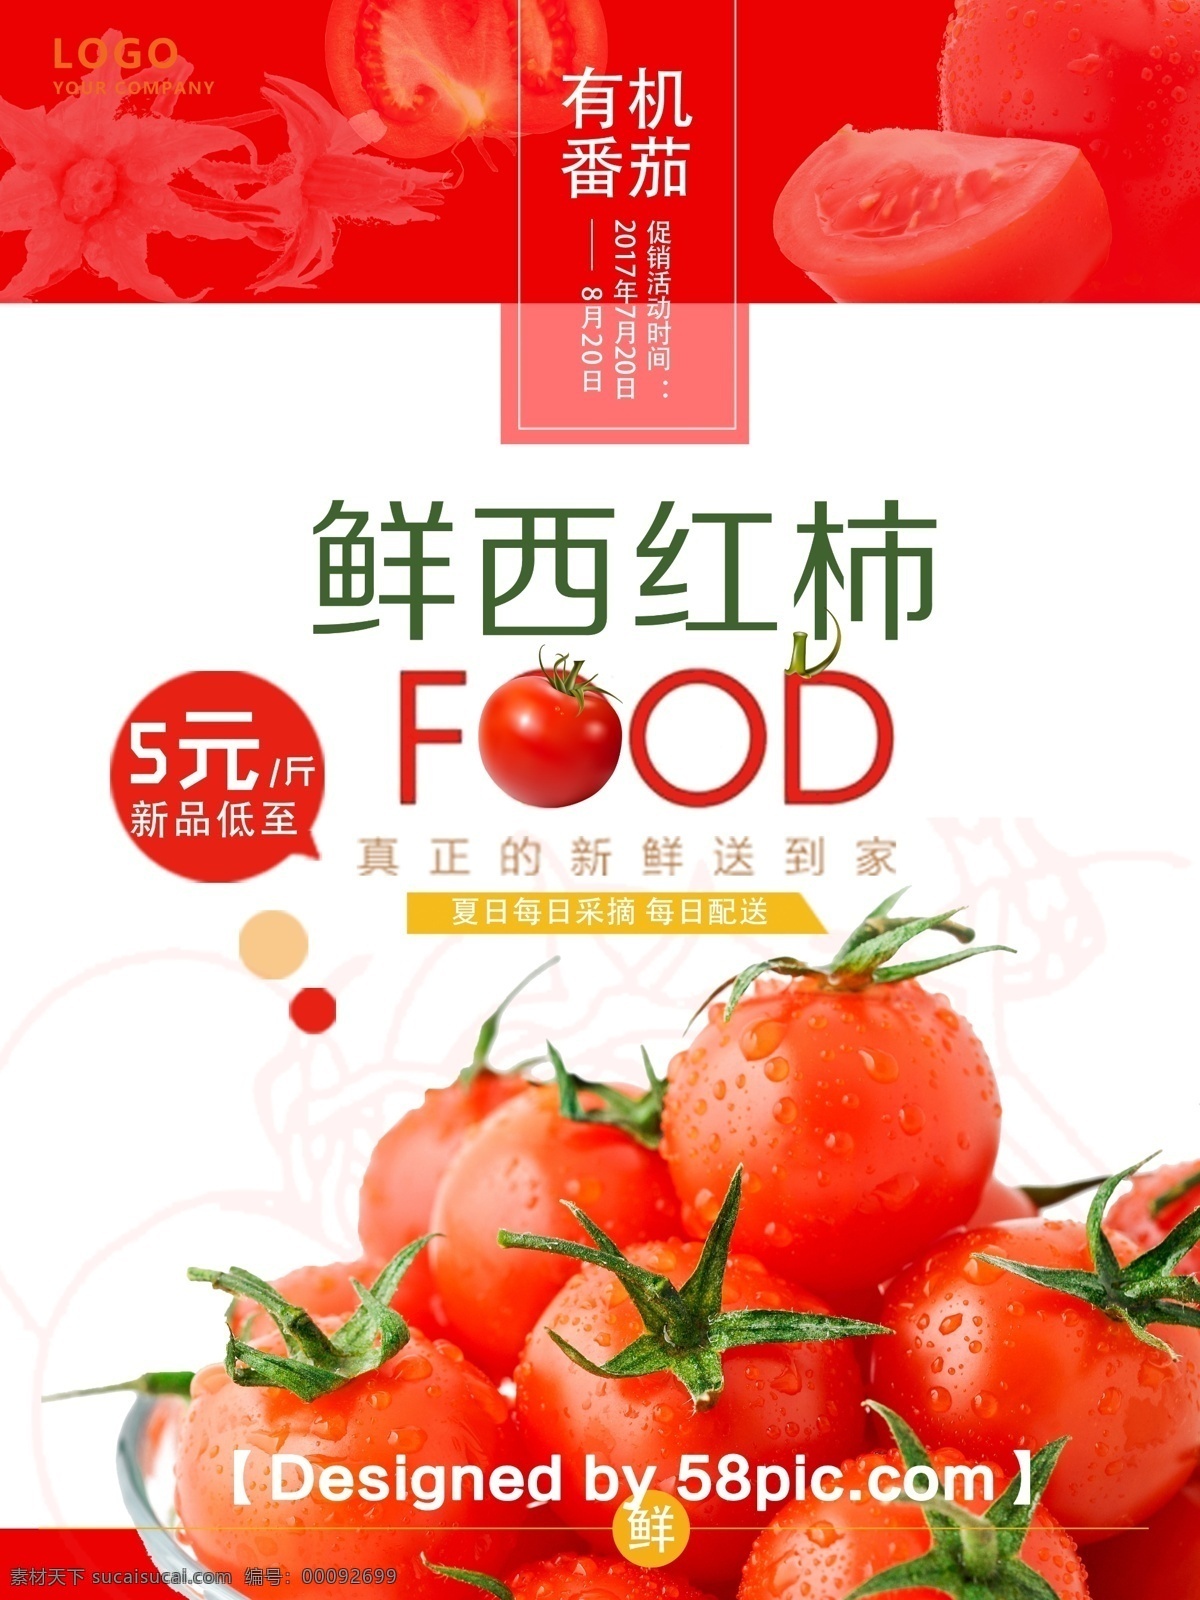 简约大气 psd素材 新鲜西红柿 新品上市 促销海报 番茄素材 夏日蔬菜 广告设计素材 有机蔬菜